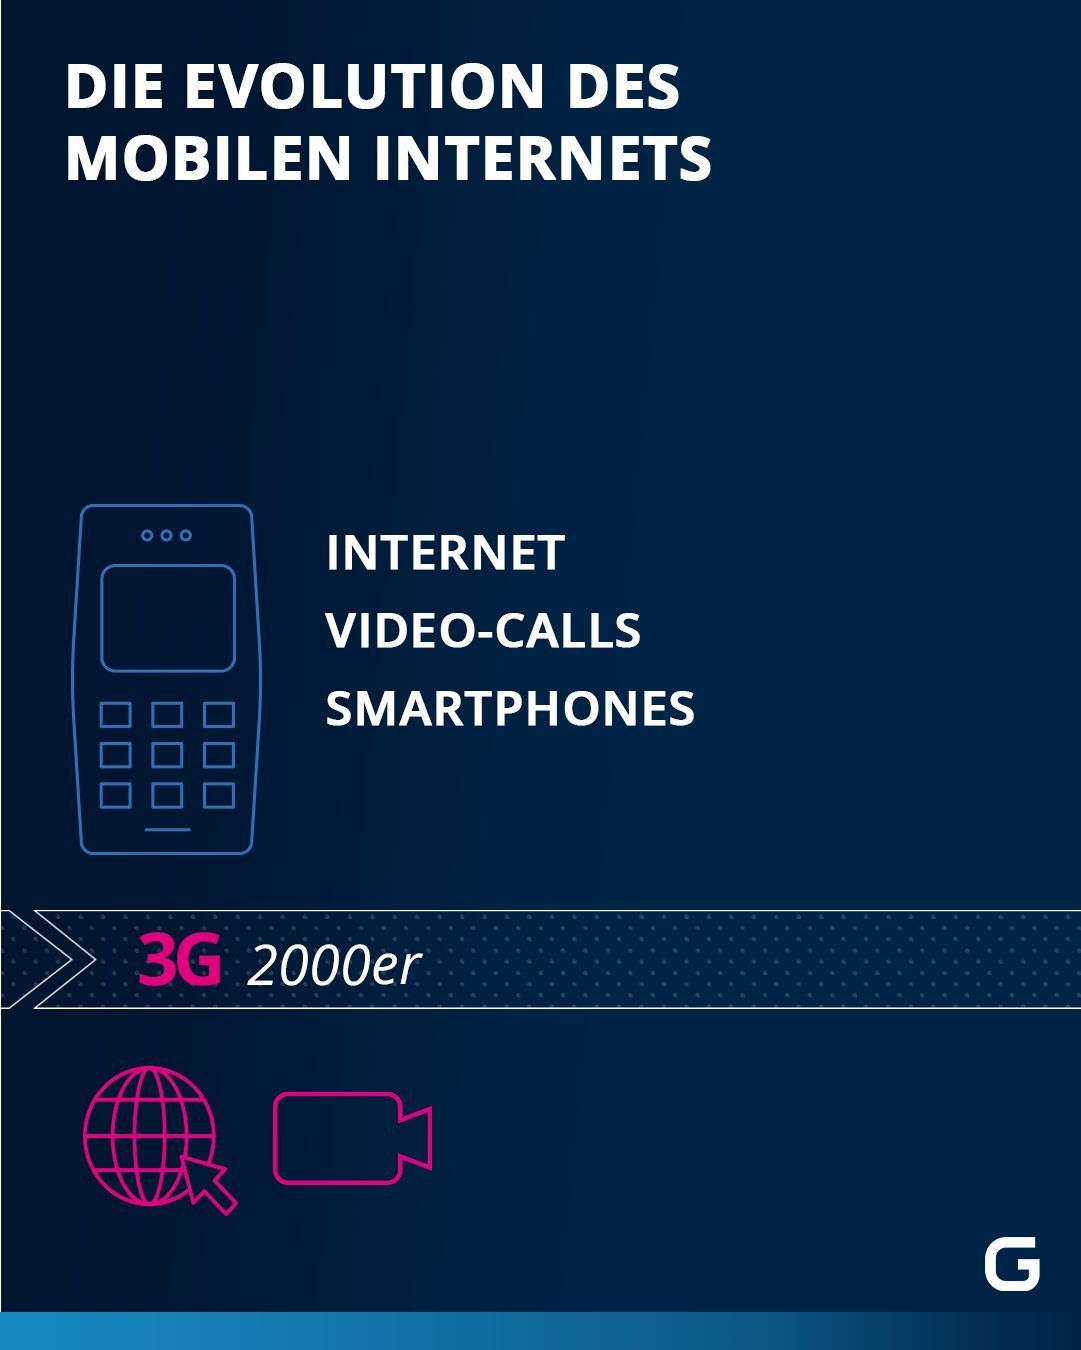 Evolution des Mobilen Internets: 3G